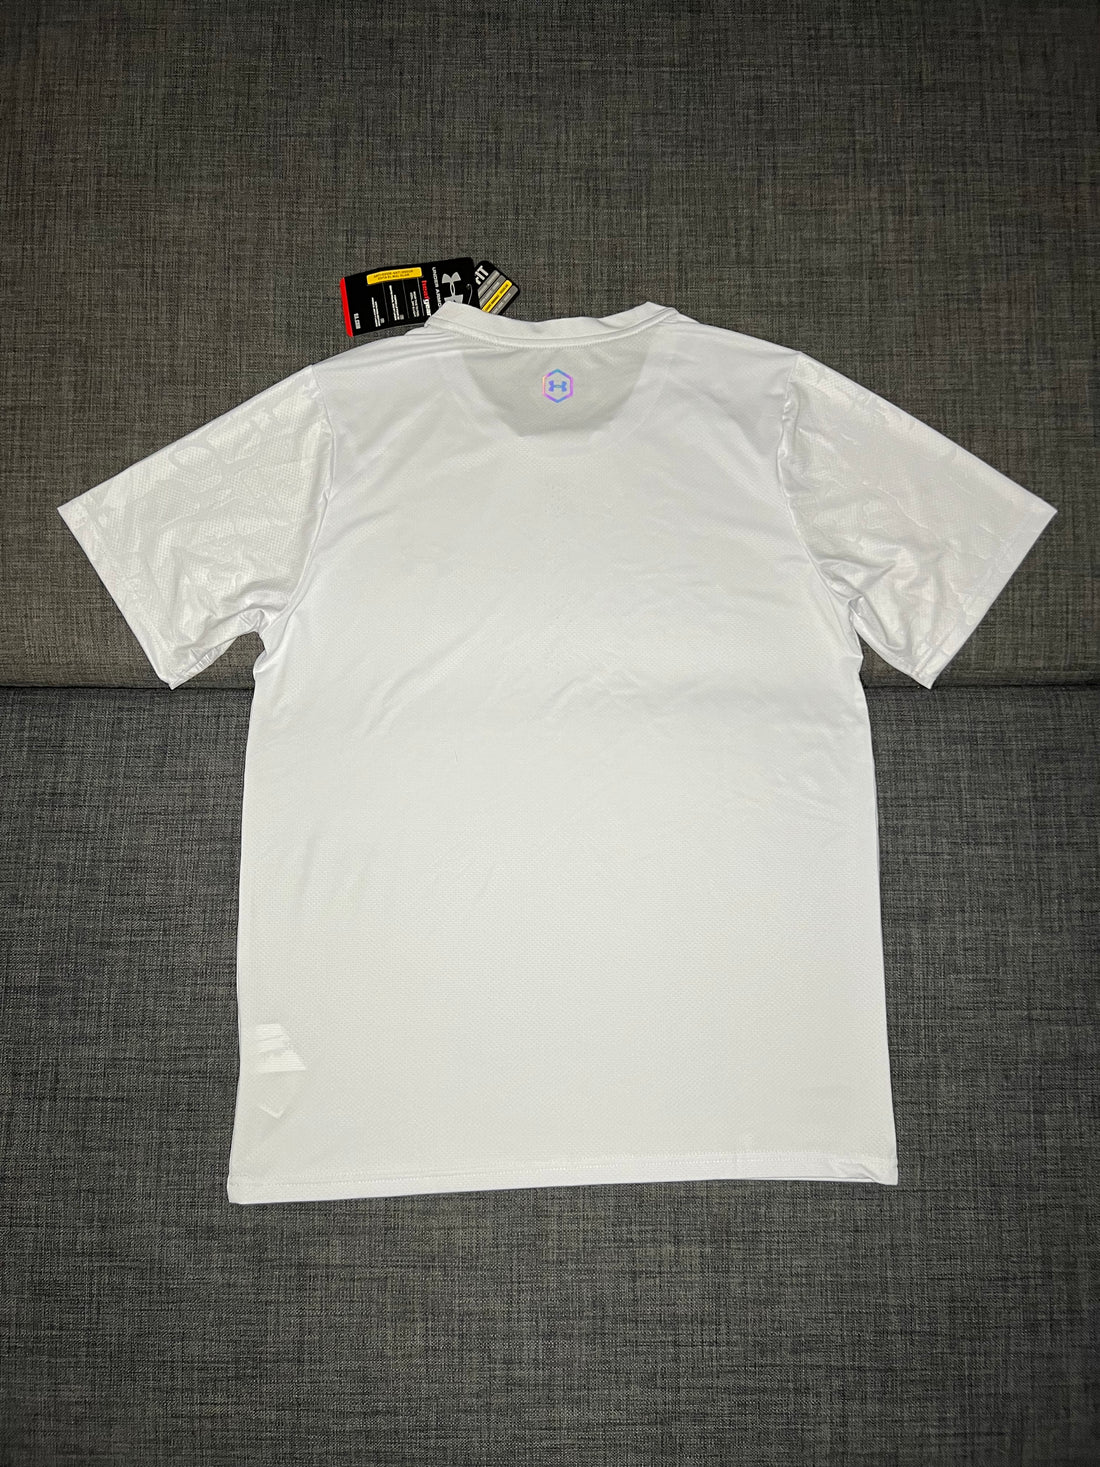 NEW T-shirt Blanc Fluorescent